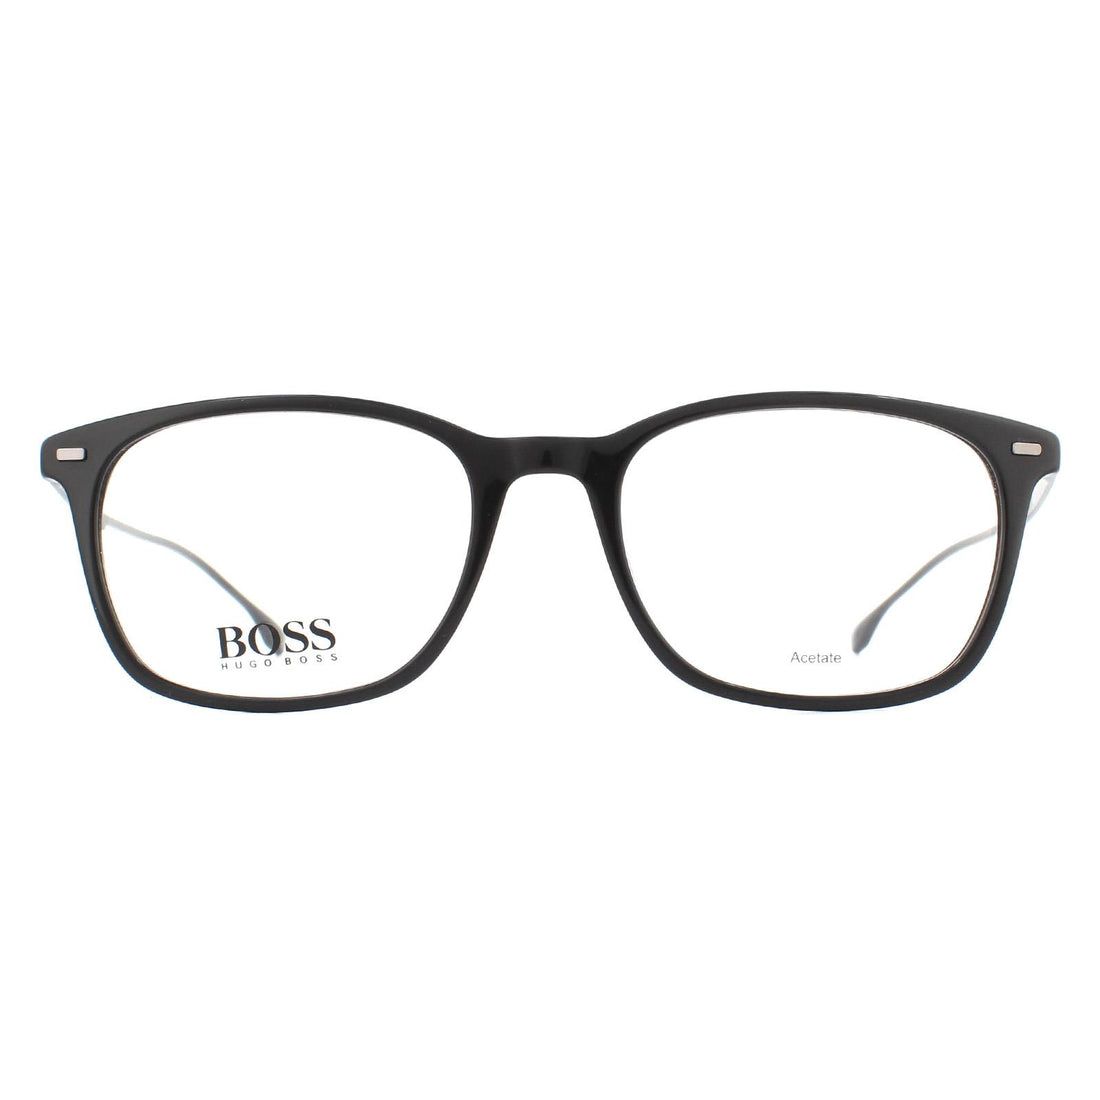 Hugo Boss BOSS 1015 Glasses Frames Black